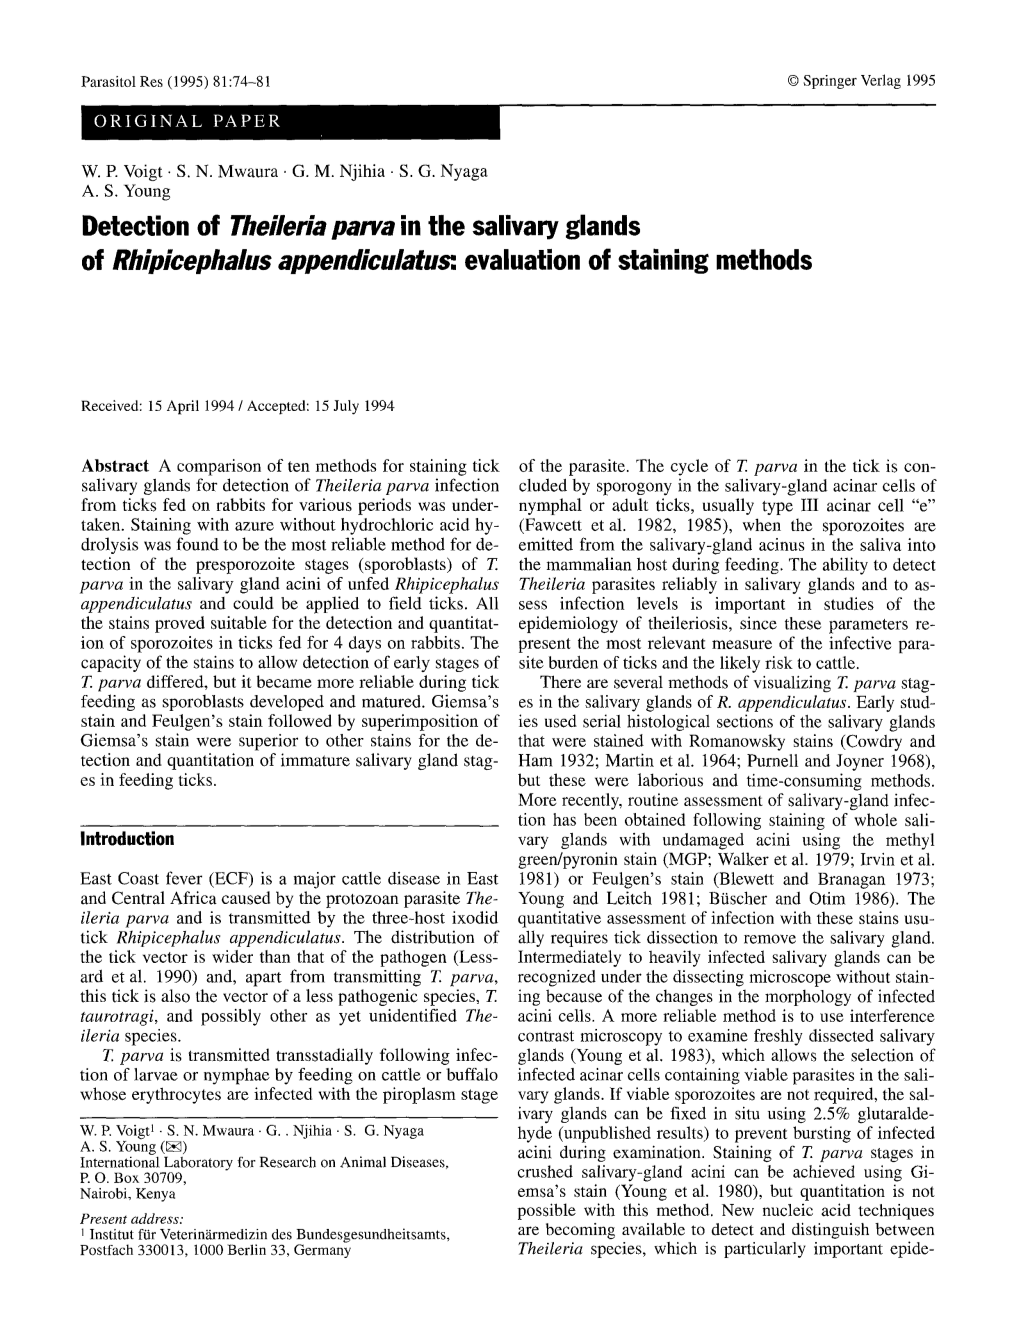 Theileria Parva in the Salivary Glands of Rhipicephalu$ Appendiculatu, Evaluation of Staining Methods